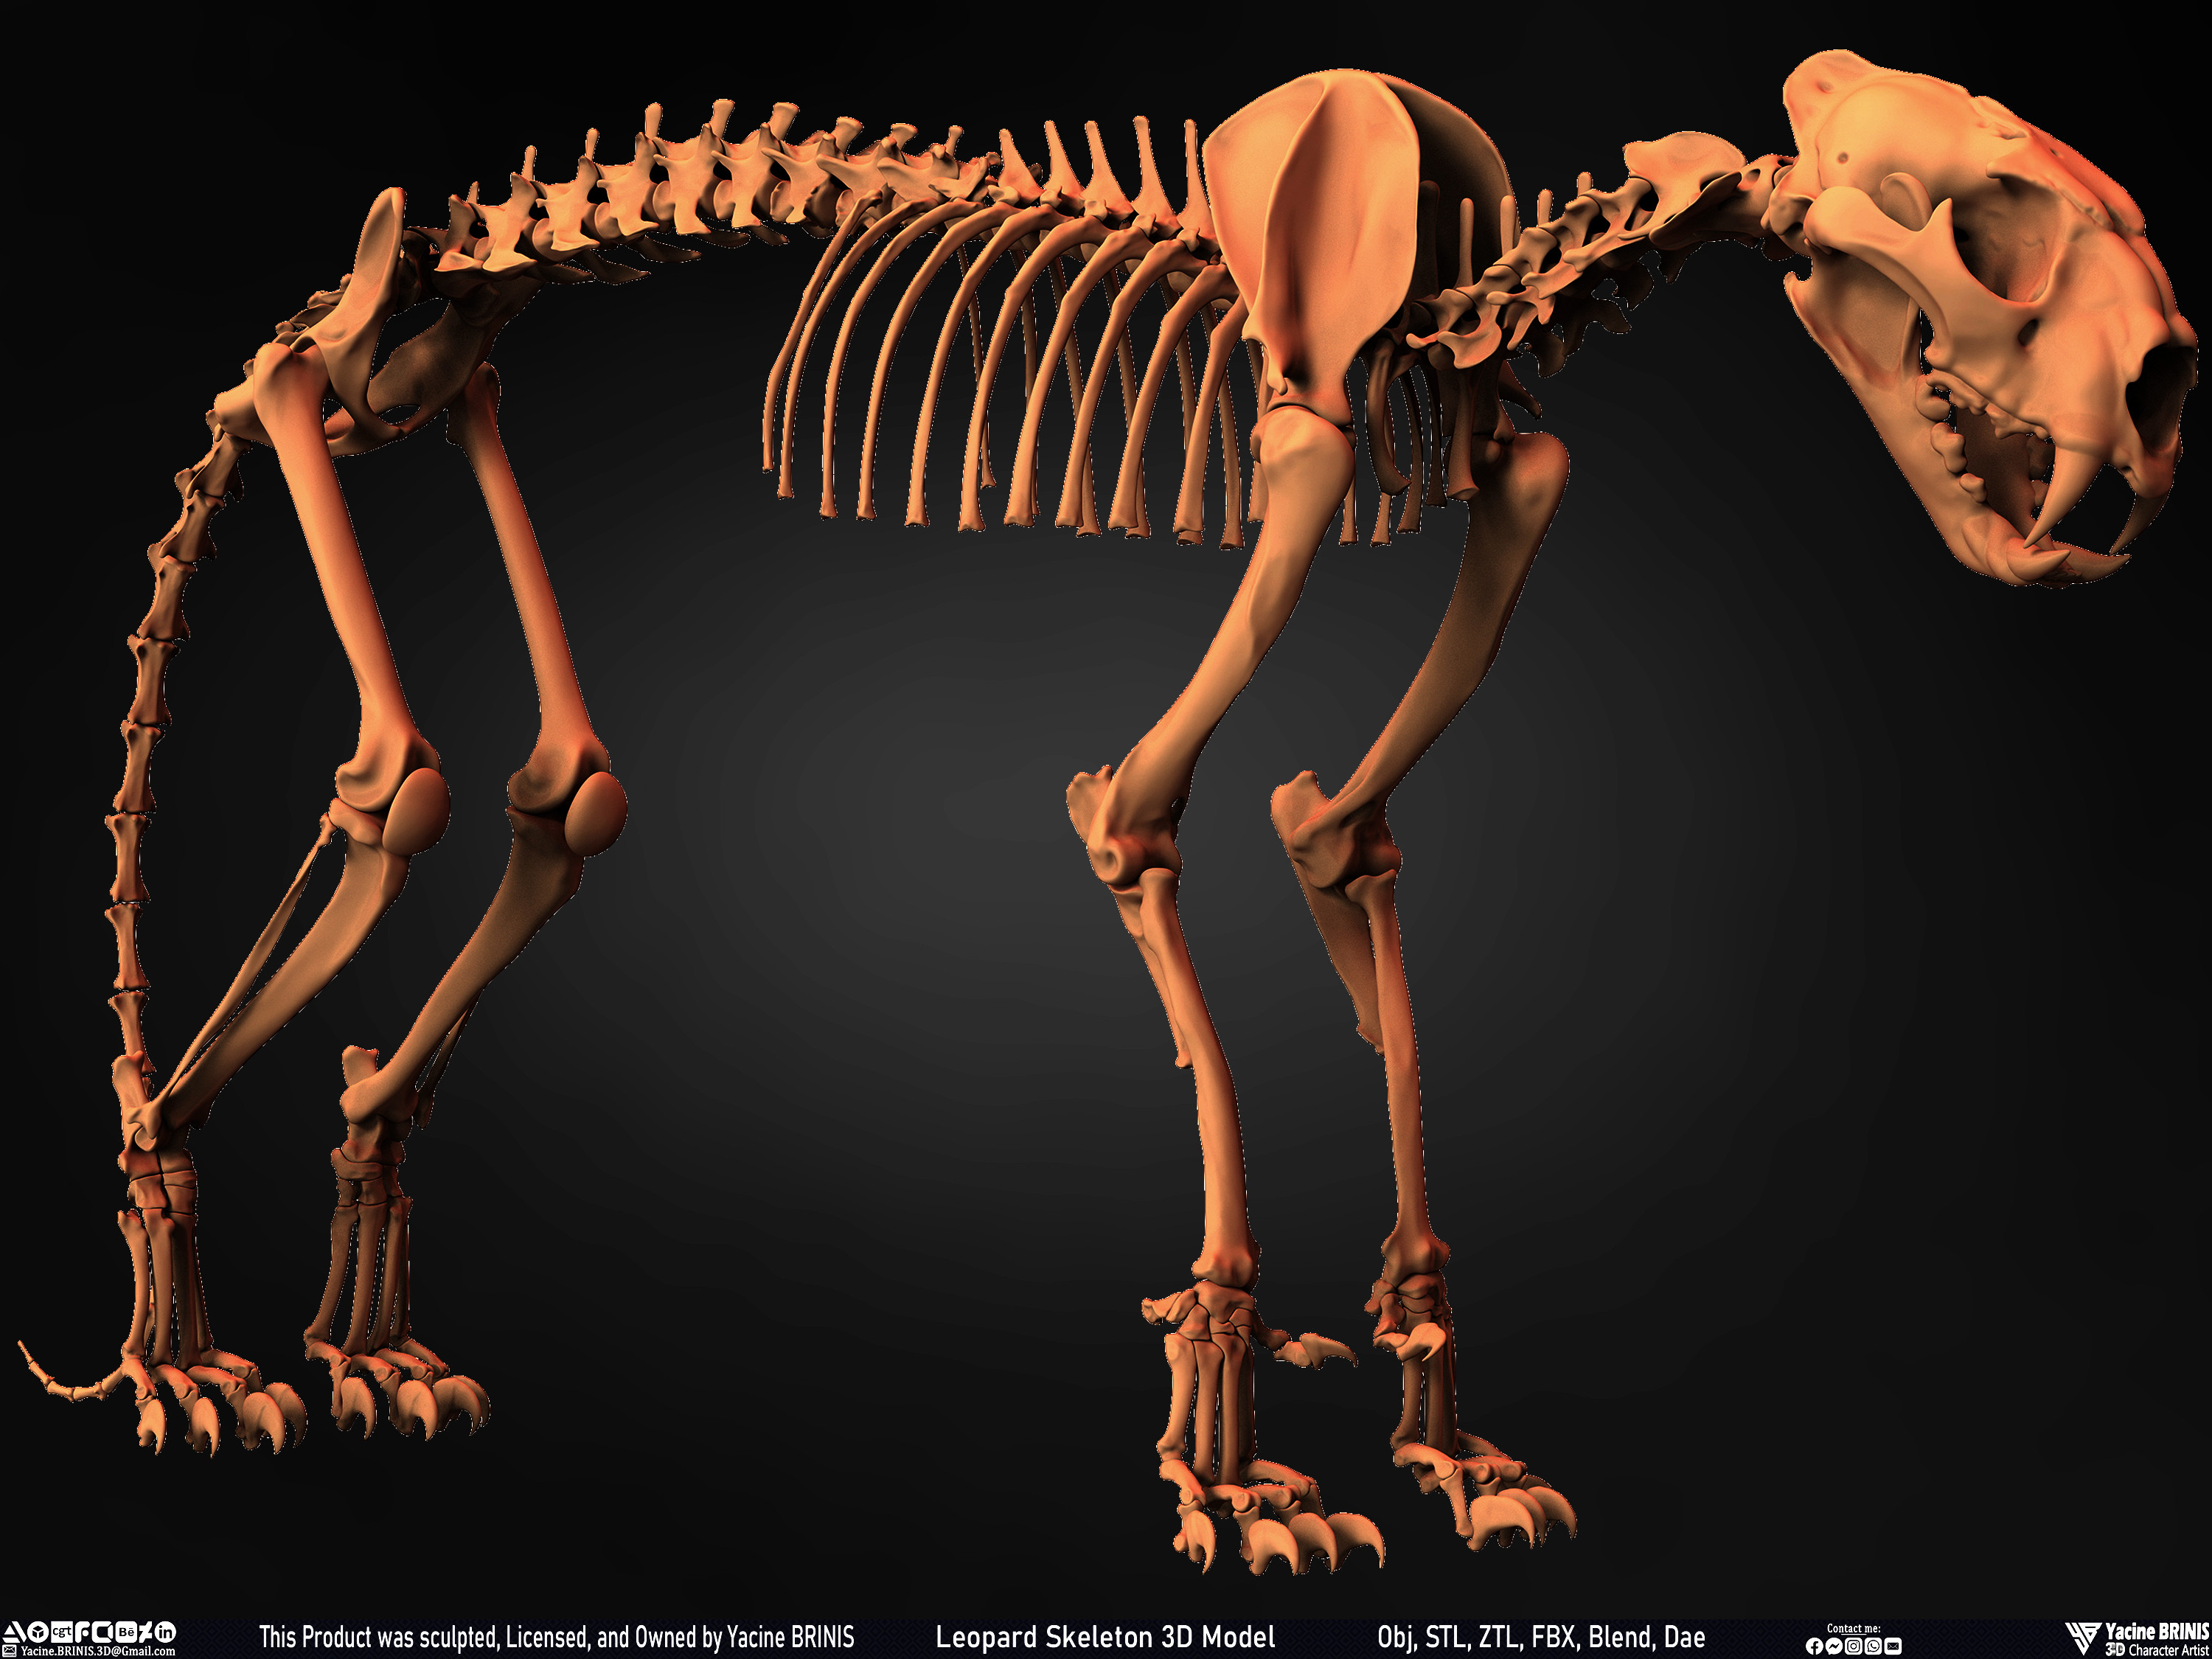 Leopard Skeleton 3D Model Sculpted By Yacine BRINIS 018